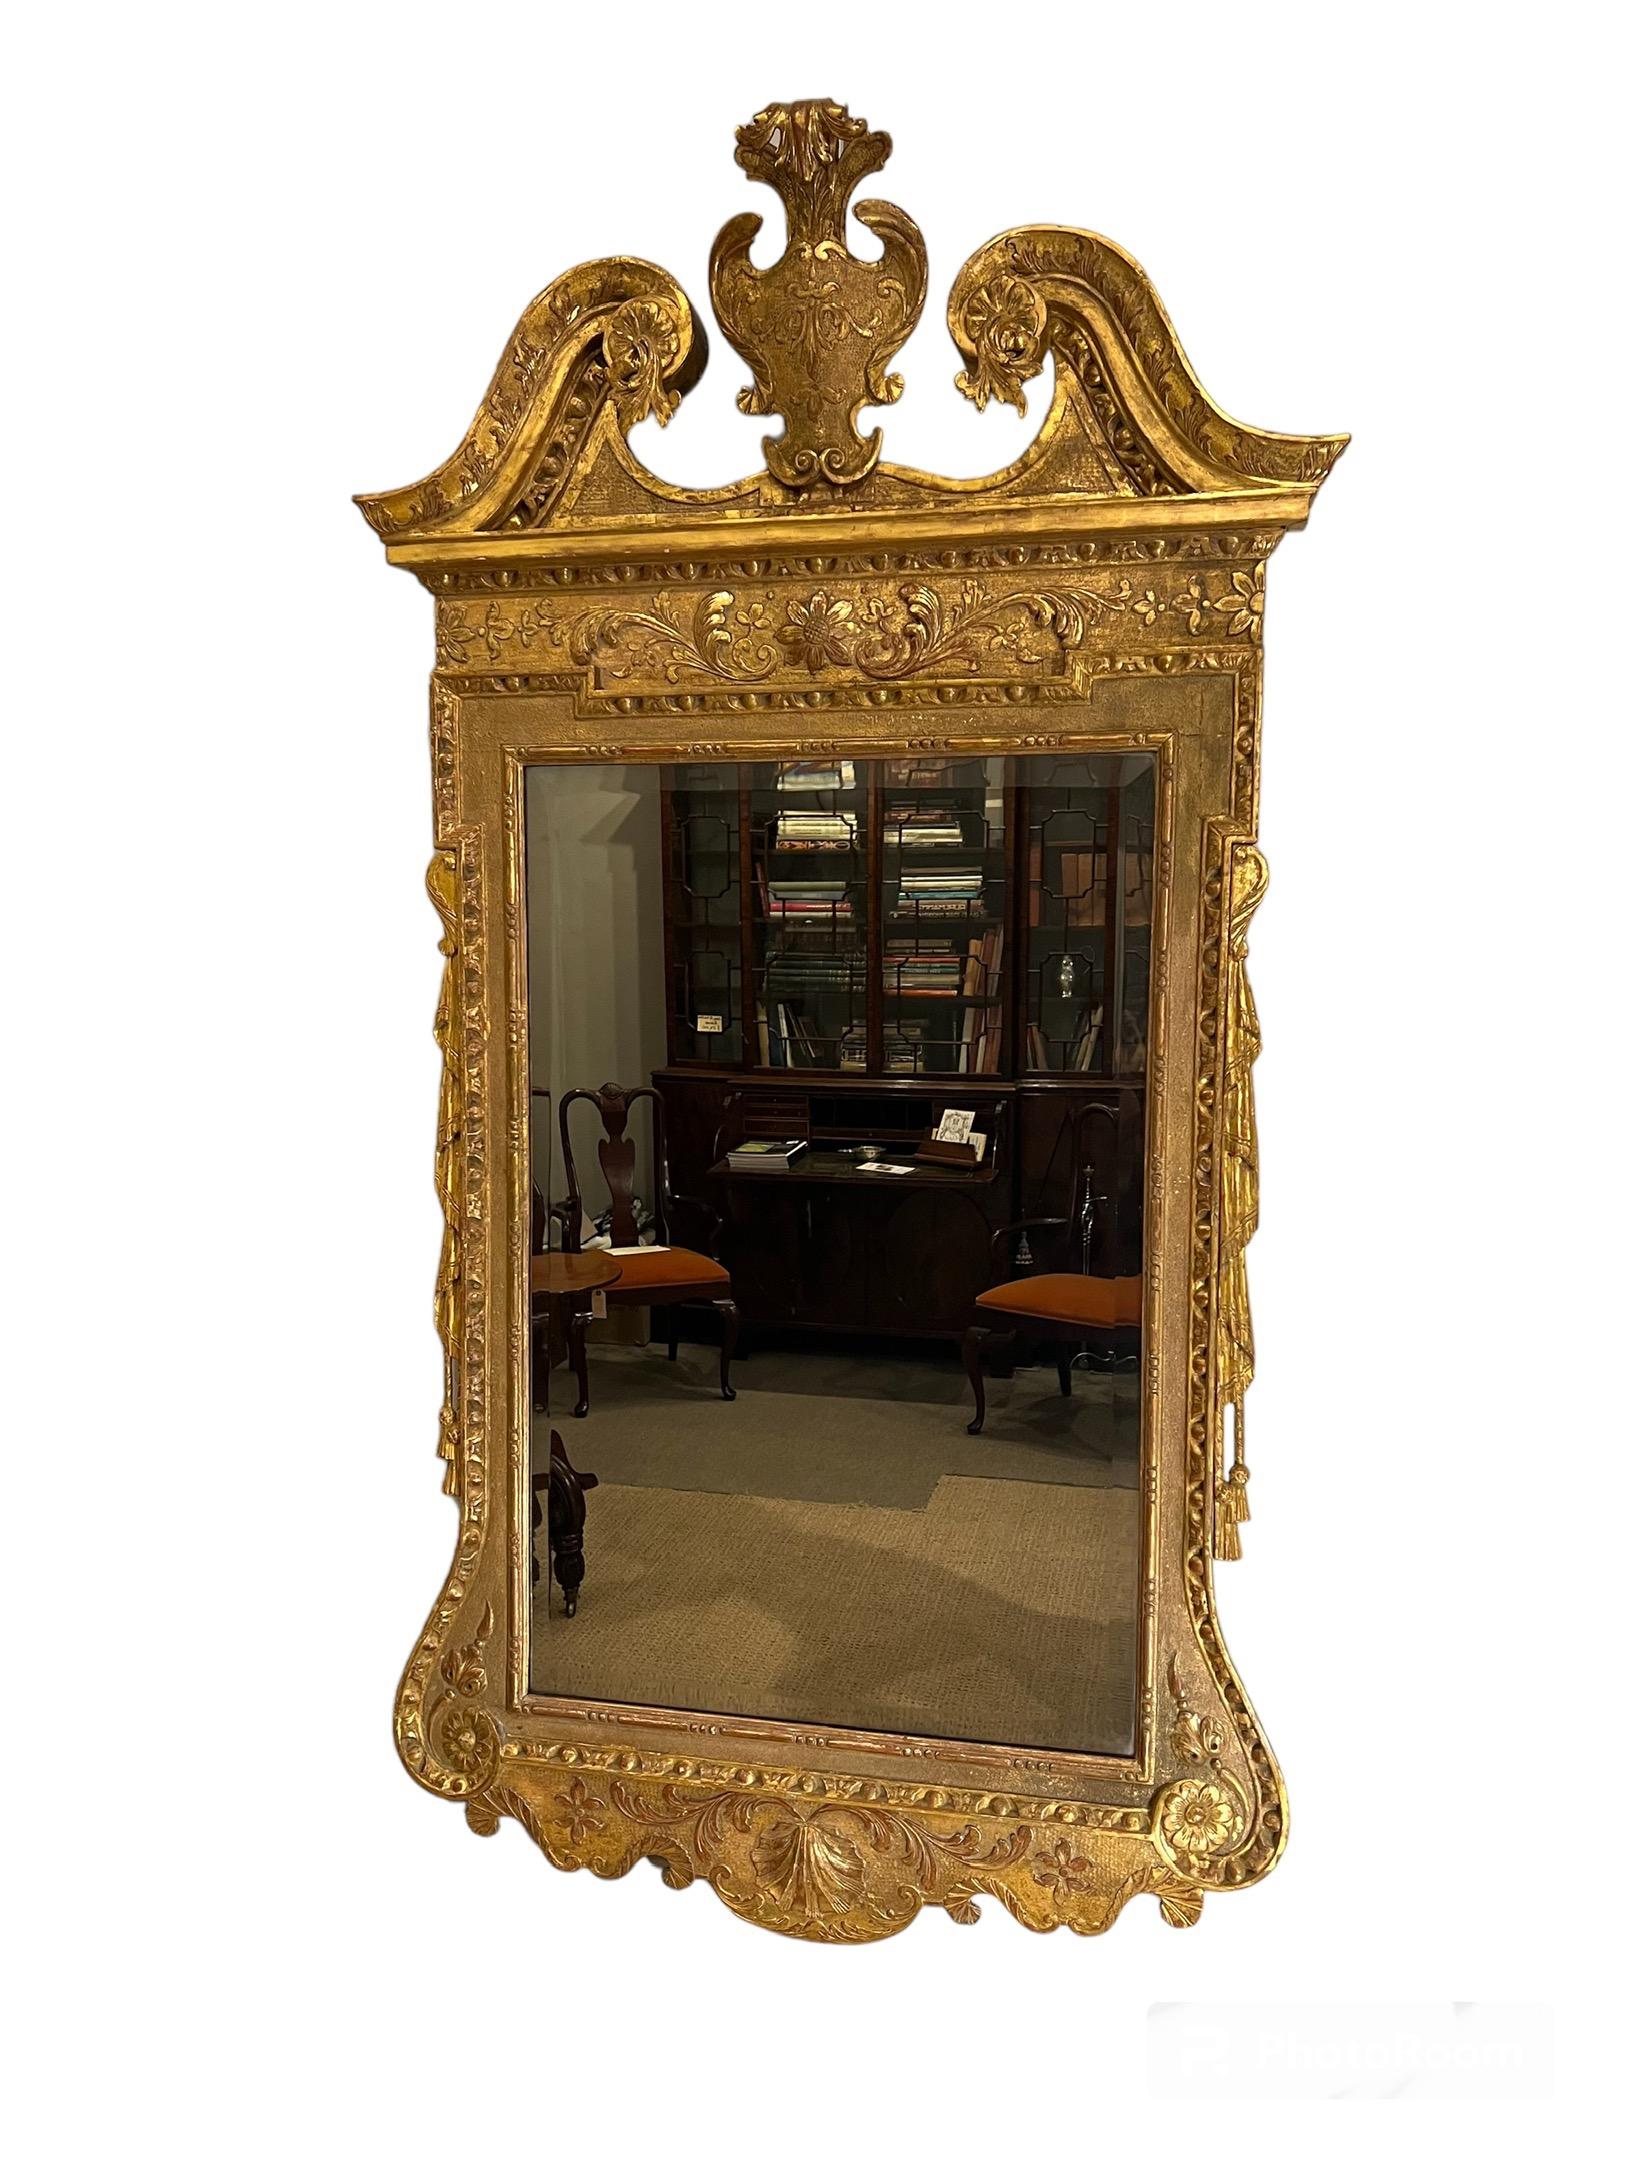 Miroir en bois doré George II
  Avec une plaque de miroir rectangulaire biseautée dans un cadre lambrissé conforme,
Sculptée de longues moulures en oolong-&-bead et en egg & dart. Le fronton en arc brisé est sculpté d'une feuille d'acanthe sur un